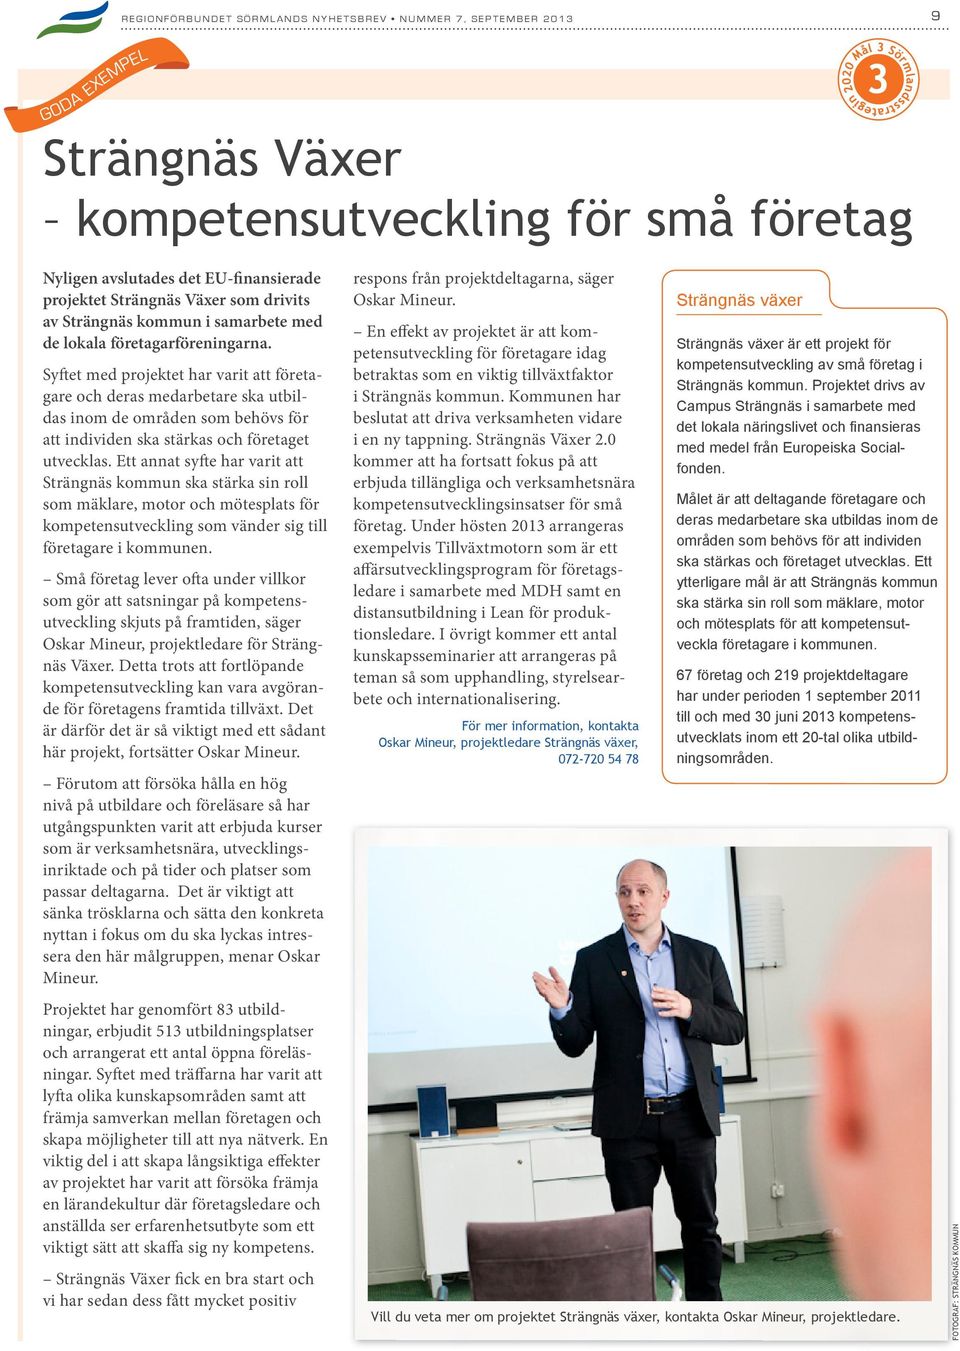 Ett annat syfte har varit att Strängnäs kommun ska stärka sin roll som mäklare, motor och mötesplats för kompetensutveckling som vänder sig till företagare i kommunen.